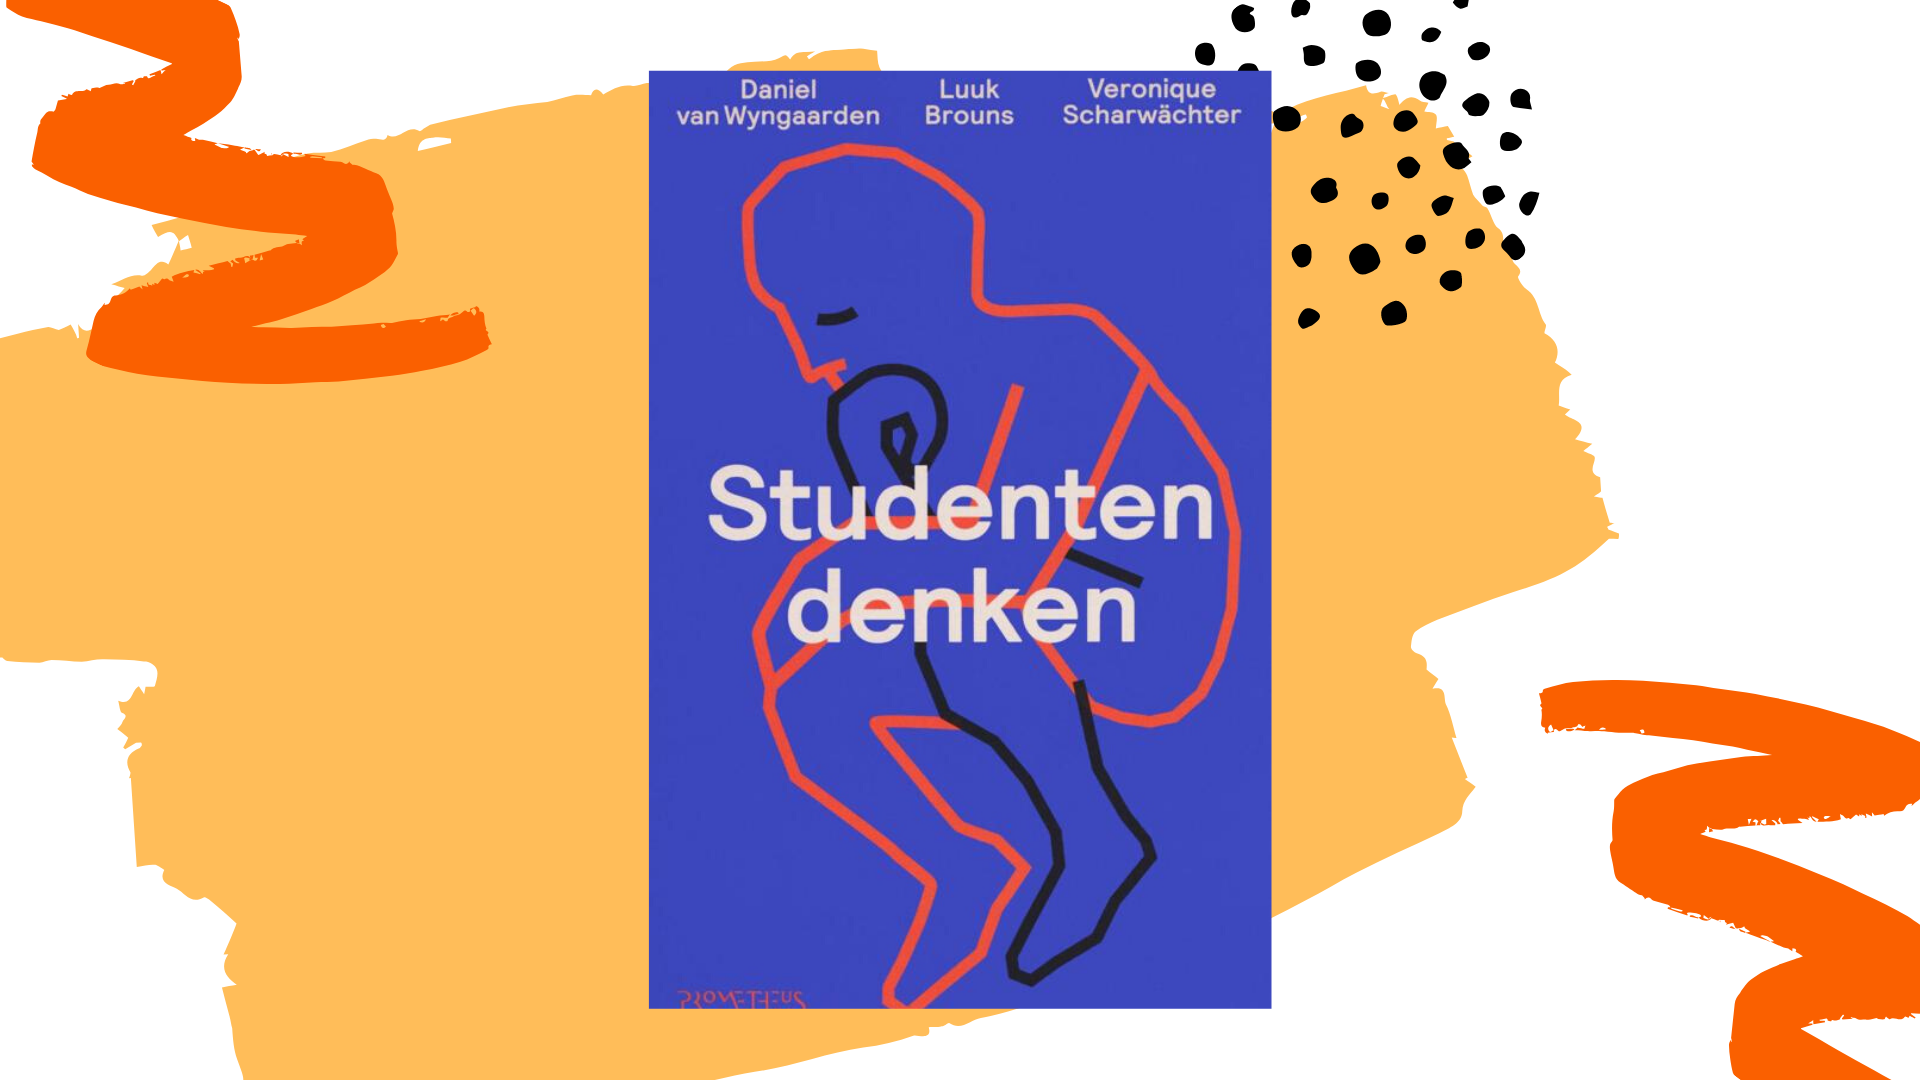 Recensie: Studentendenken - Daniel van Wyngaarden, Luuk Brouns & Veronique Scharwächter